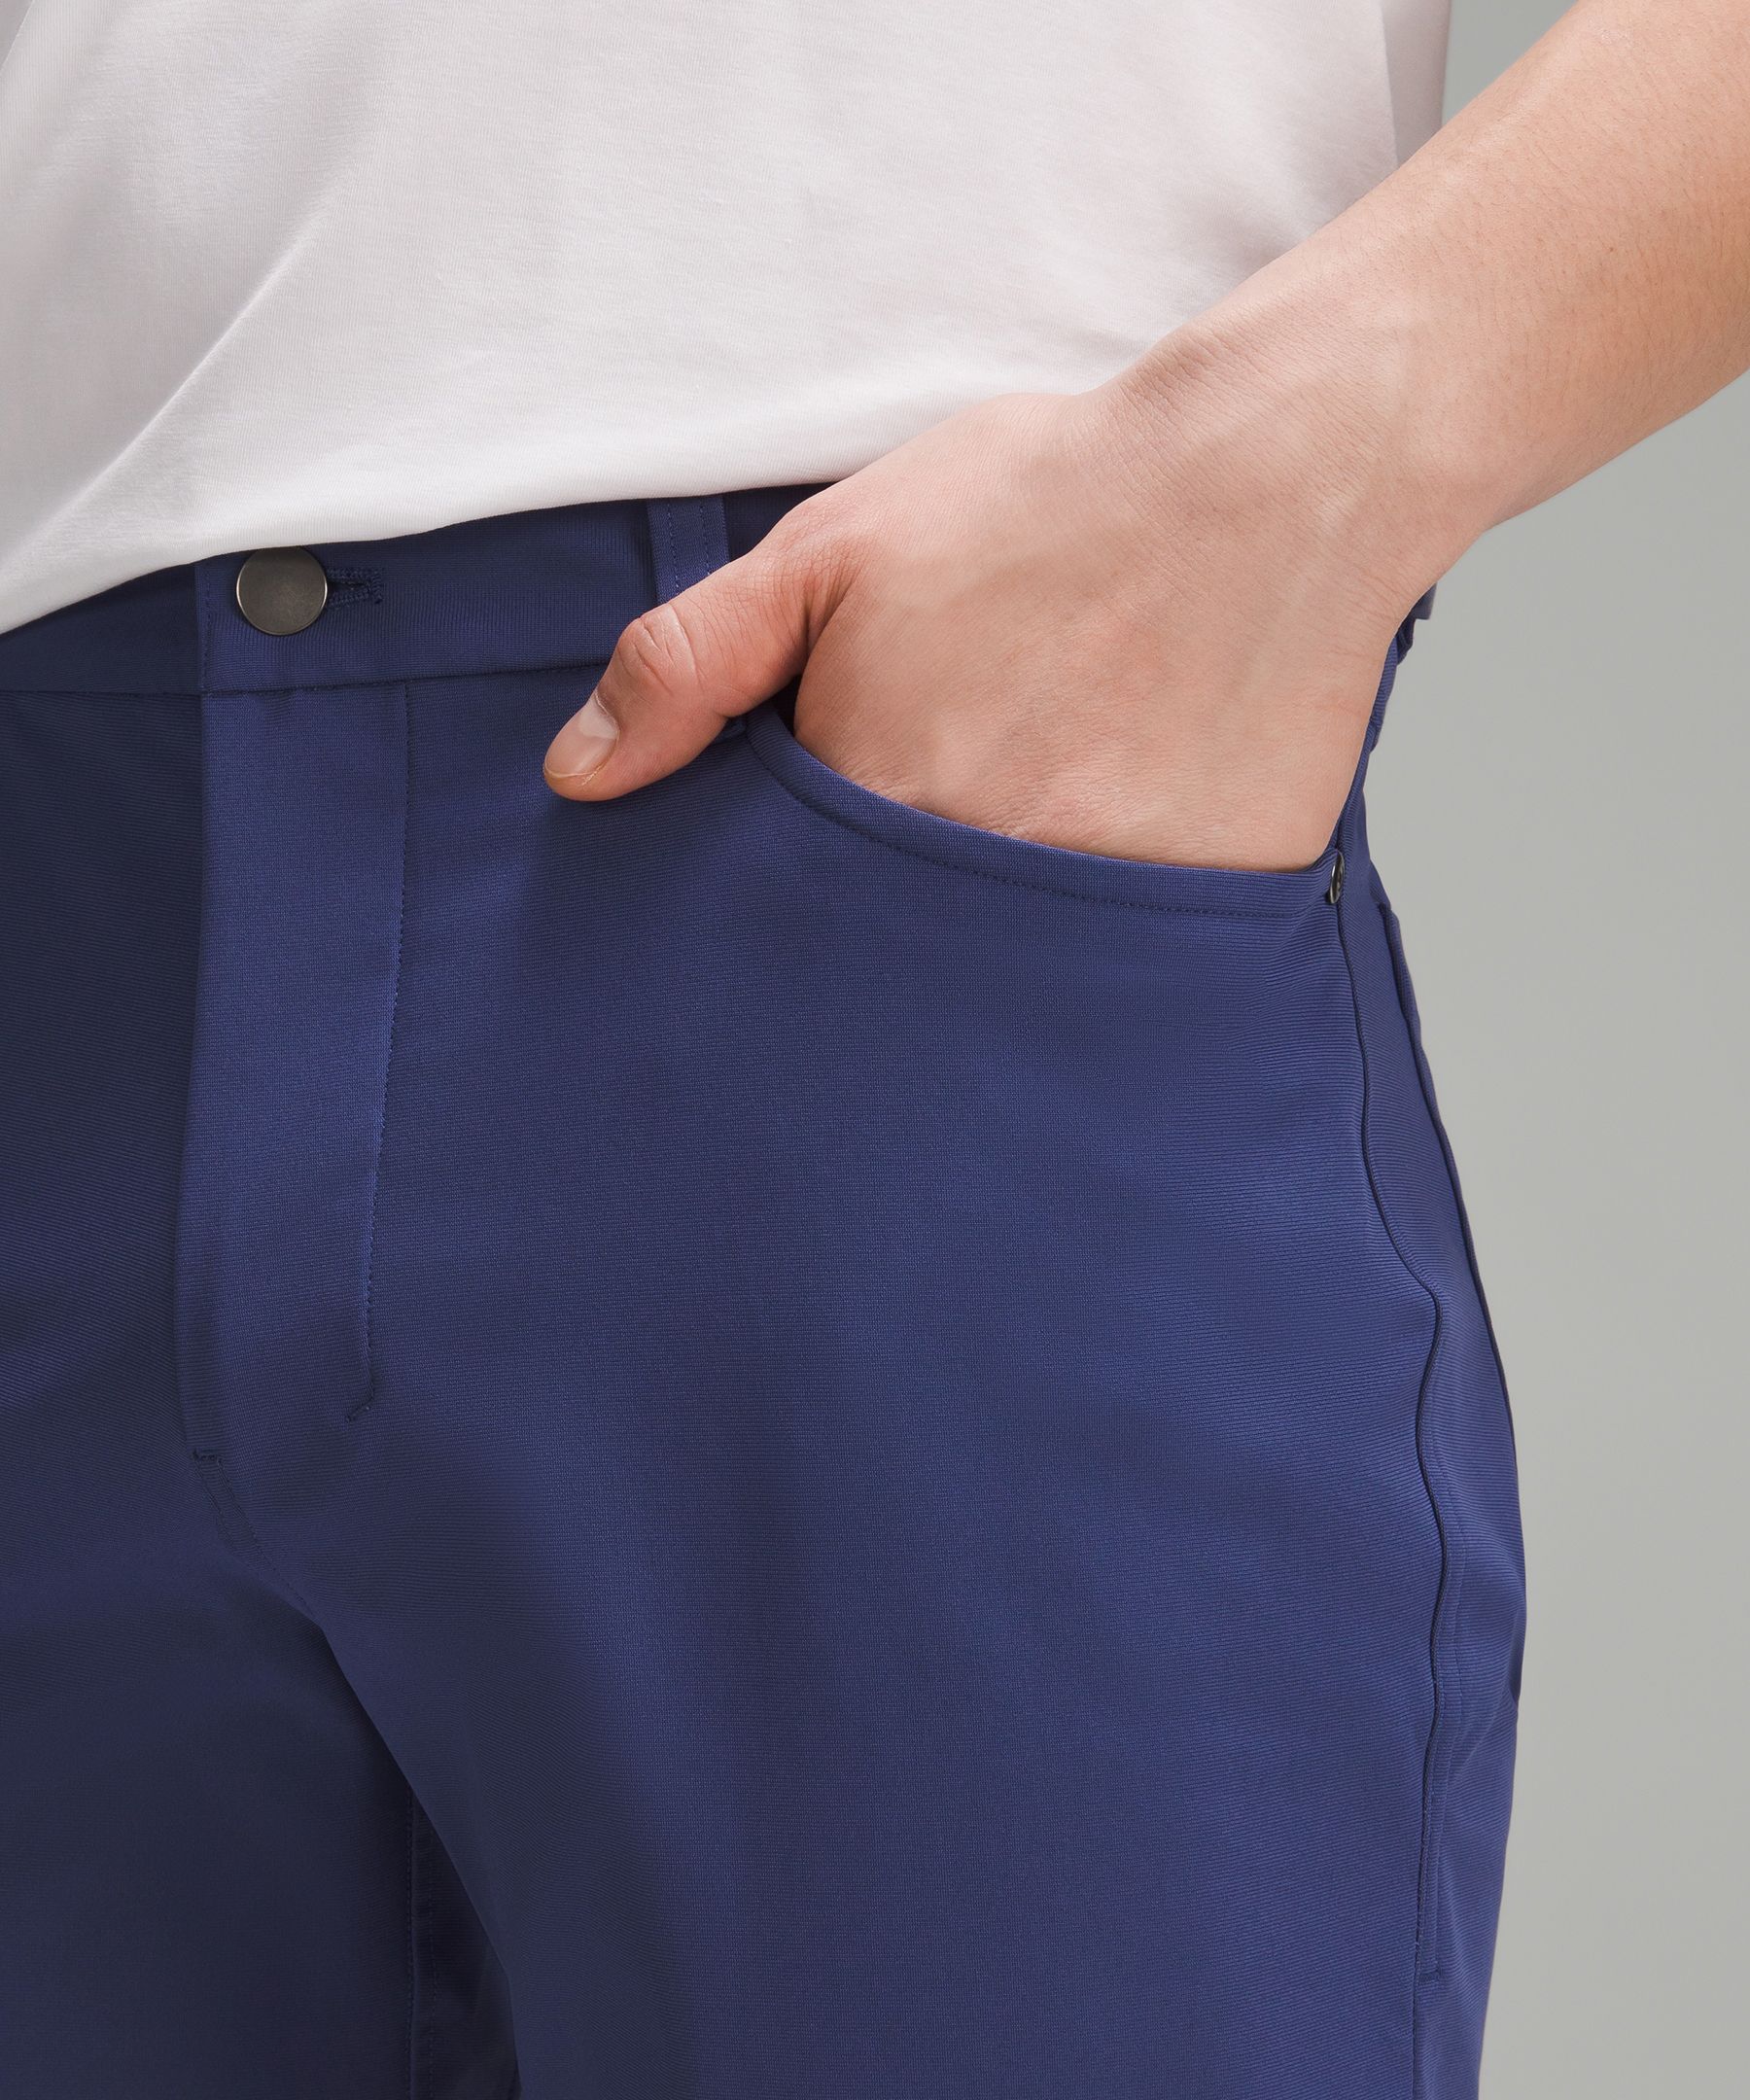 lululemon ABC Slim-Fit 5 Pocket Pant 30L Warpstreme Black Size 32 MSRP  $128